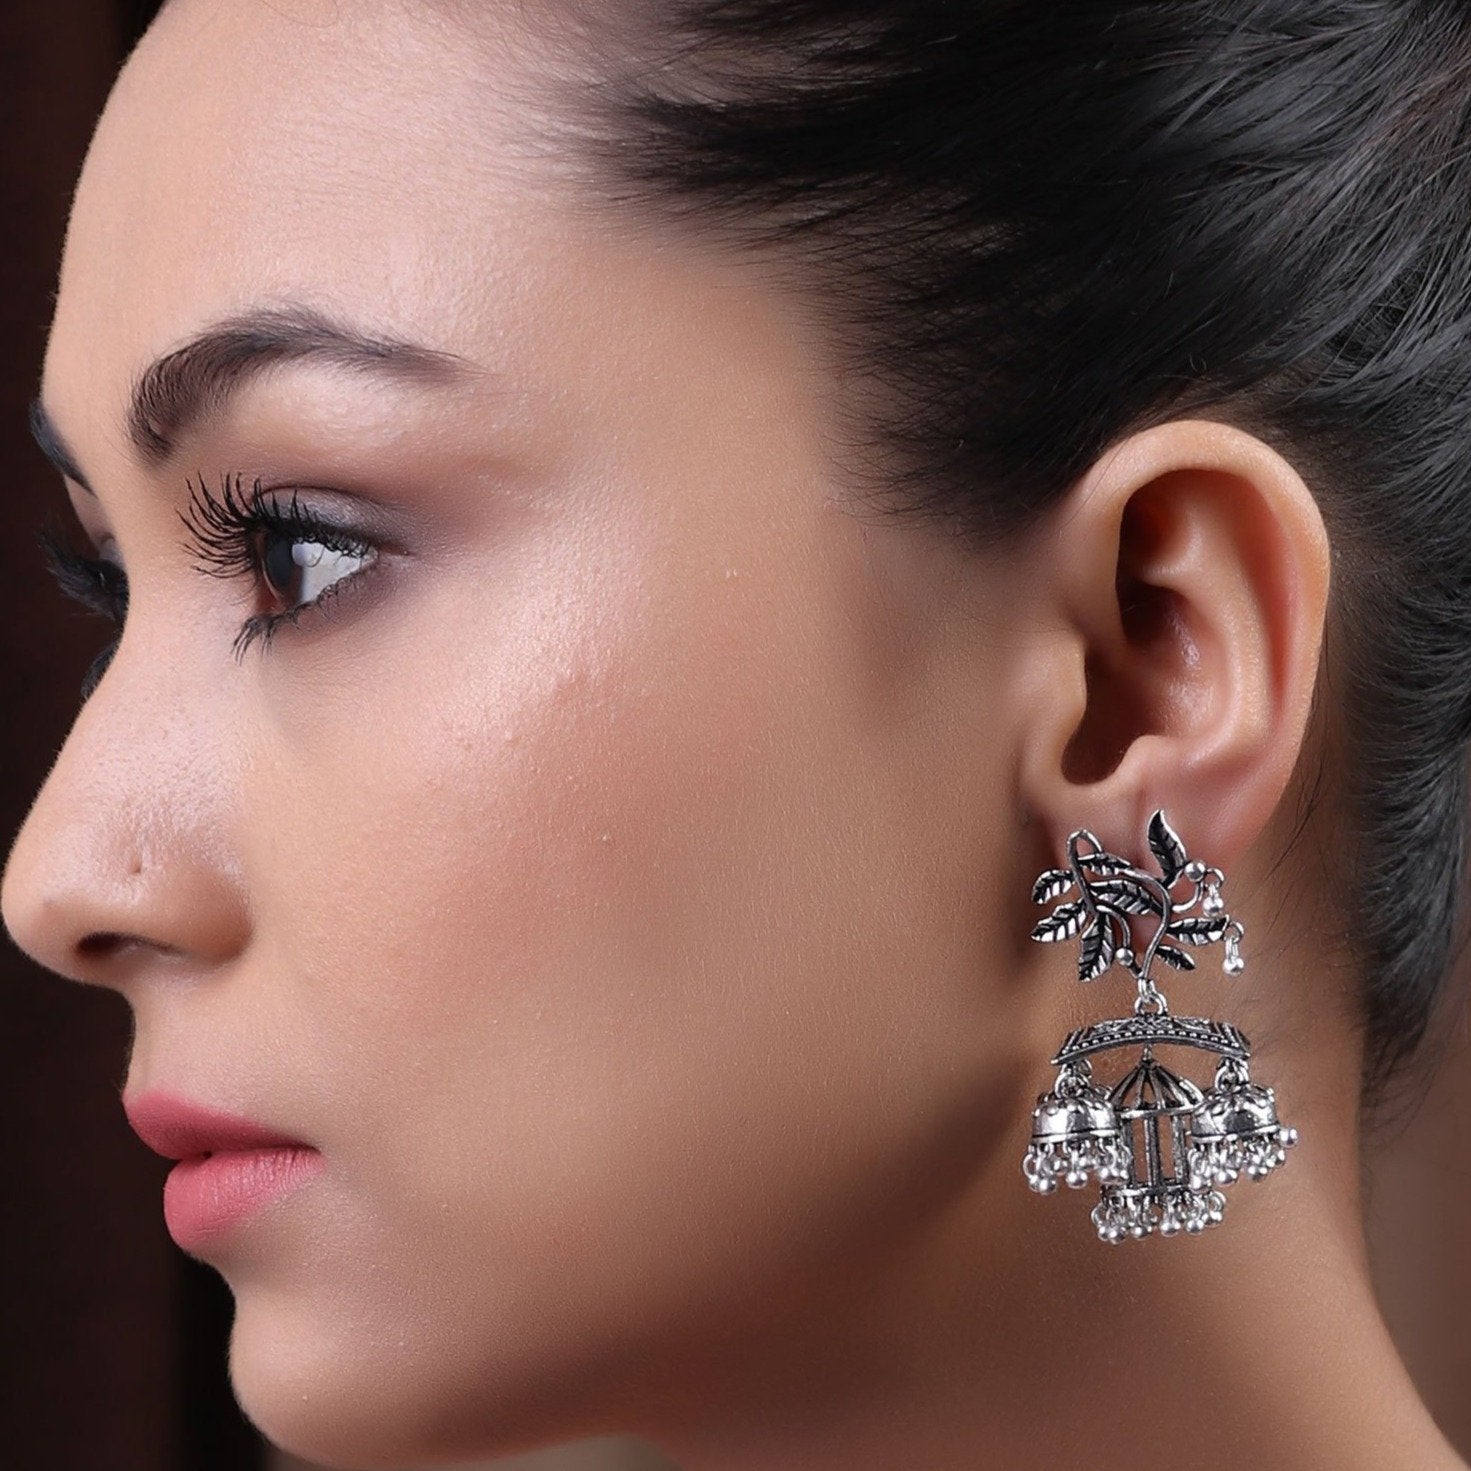 Earrings,The Sparkling Leafy Brass Silver Look Alike Earring - Cippele Multi Store